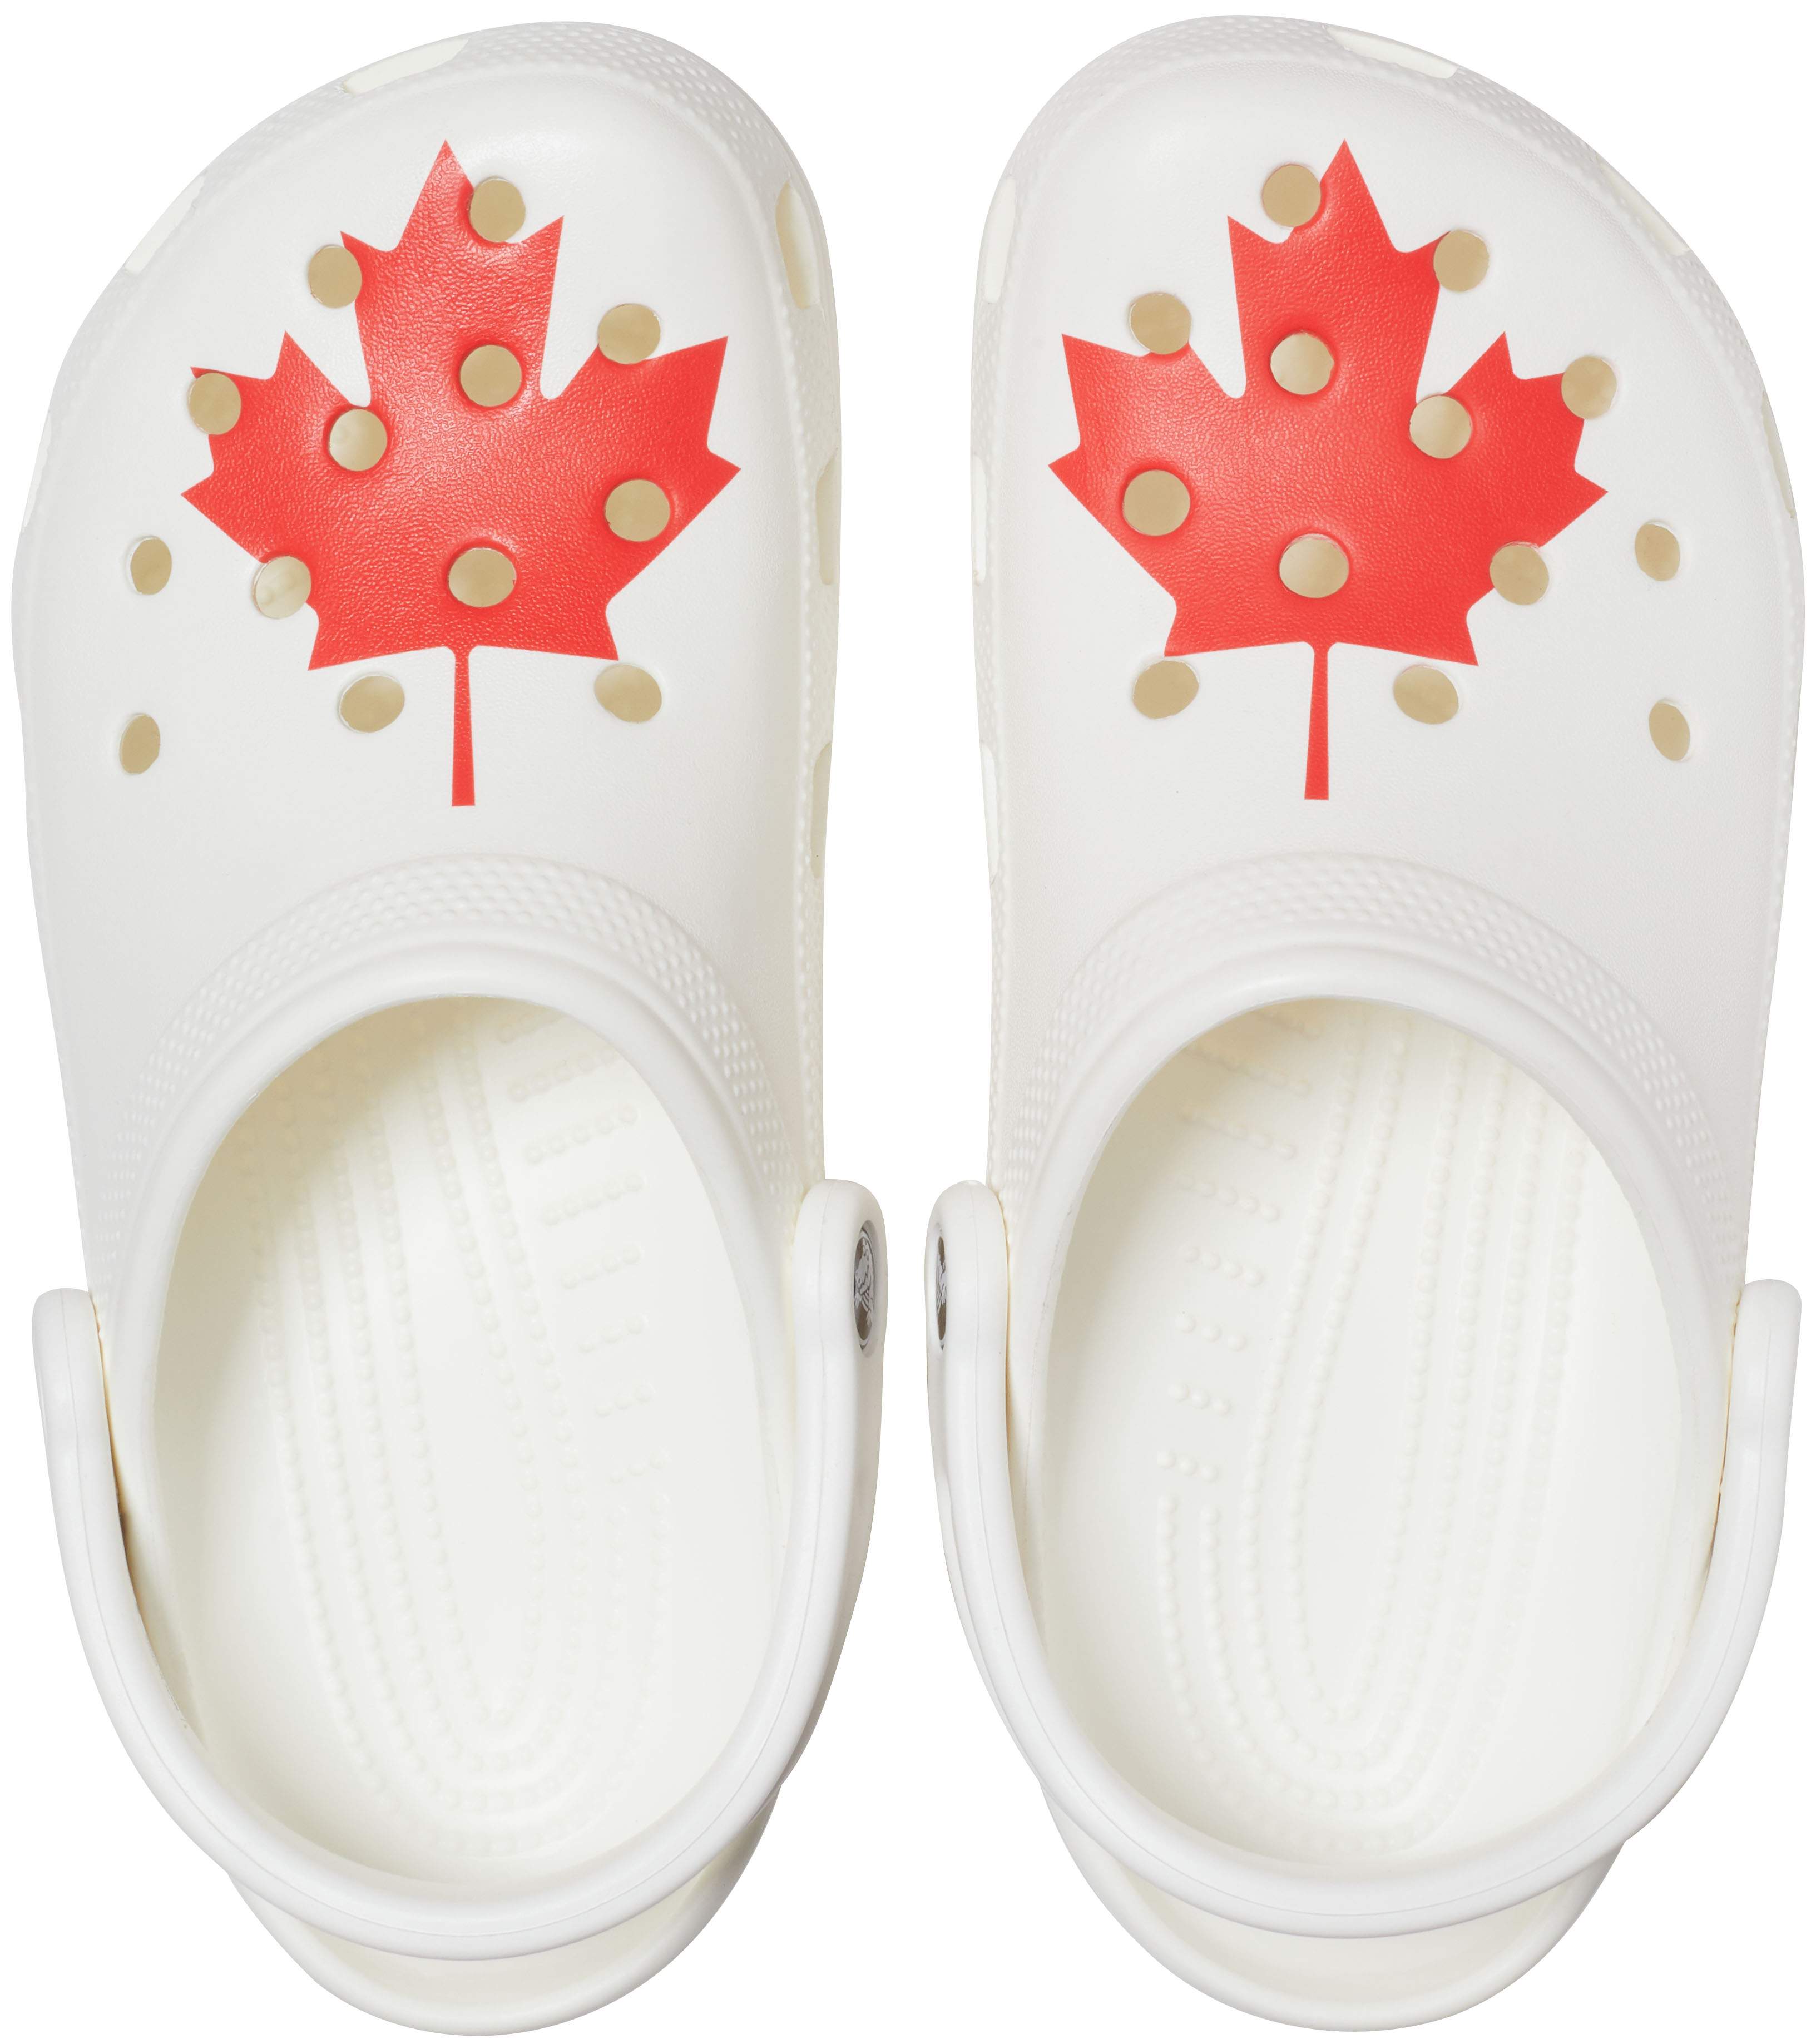 crocs sandals canada